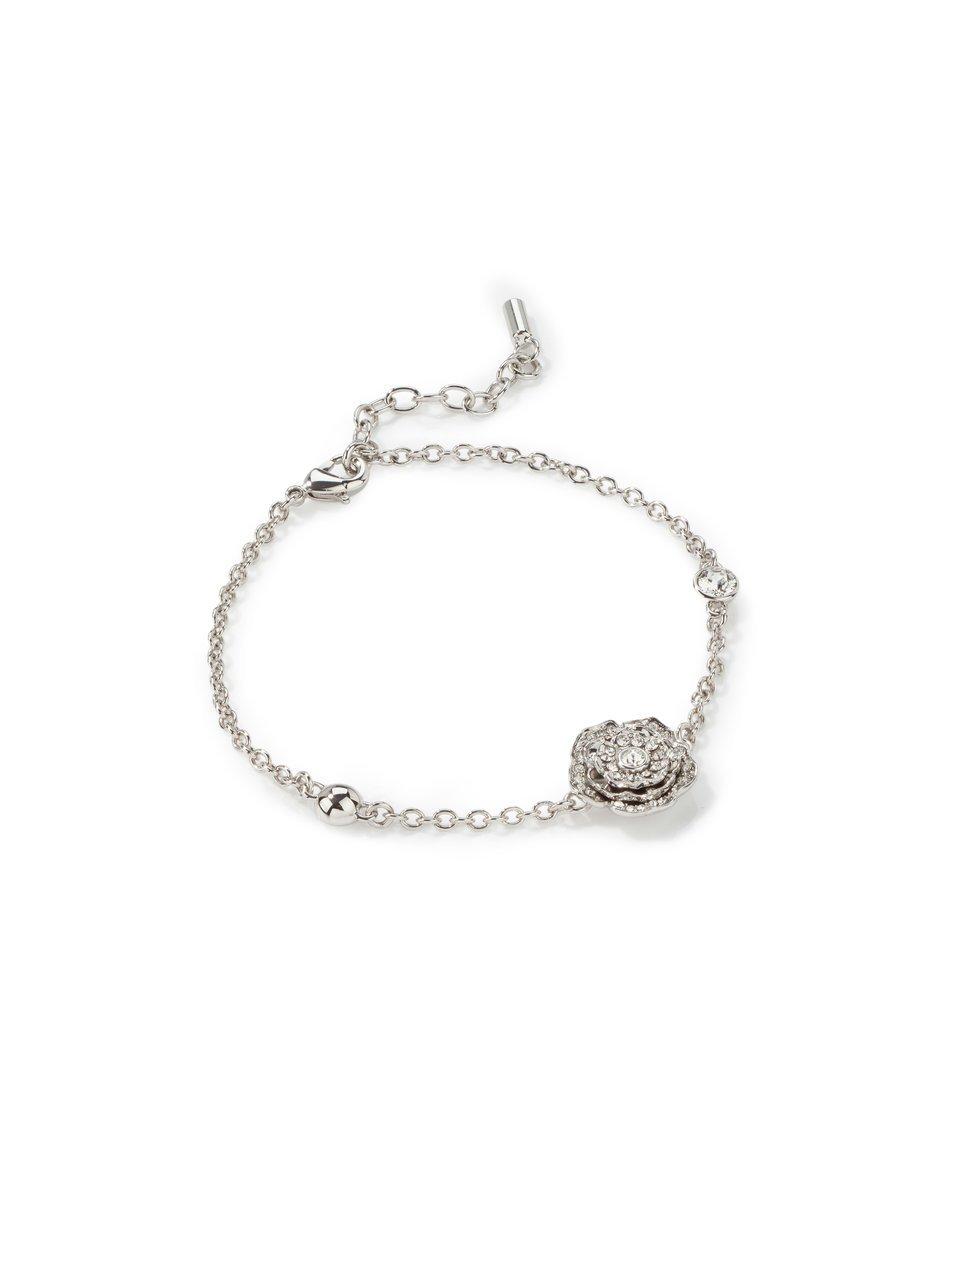 Image of Bracelet La vie en rose Uta Raasch silver